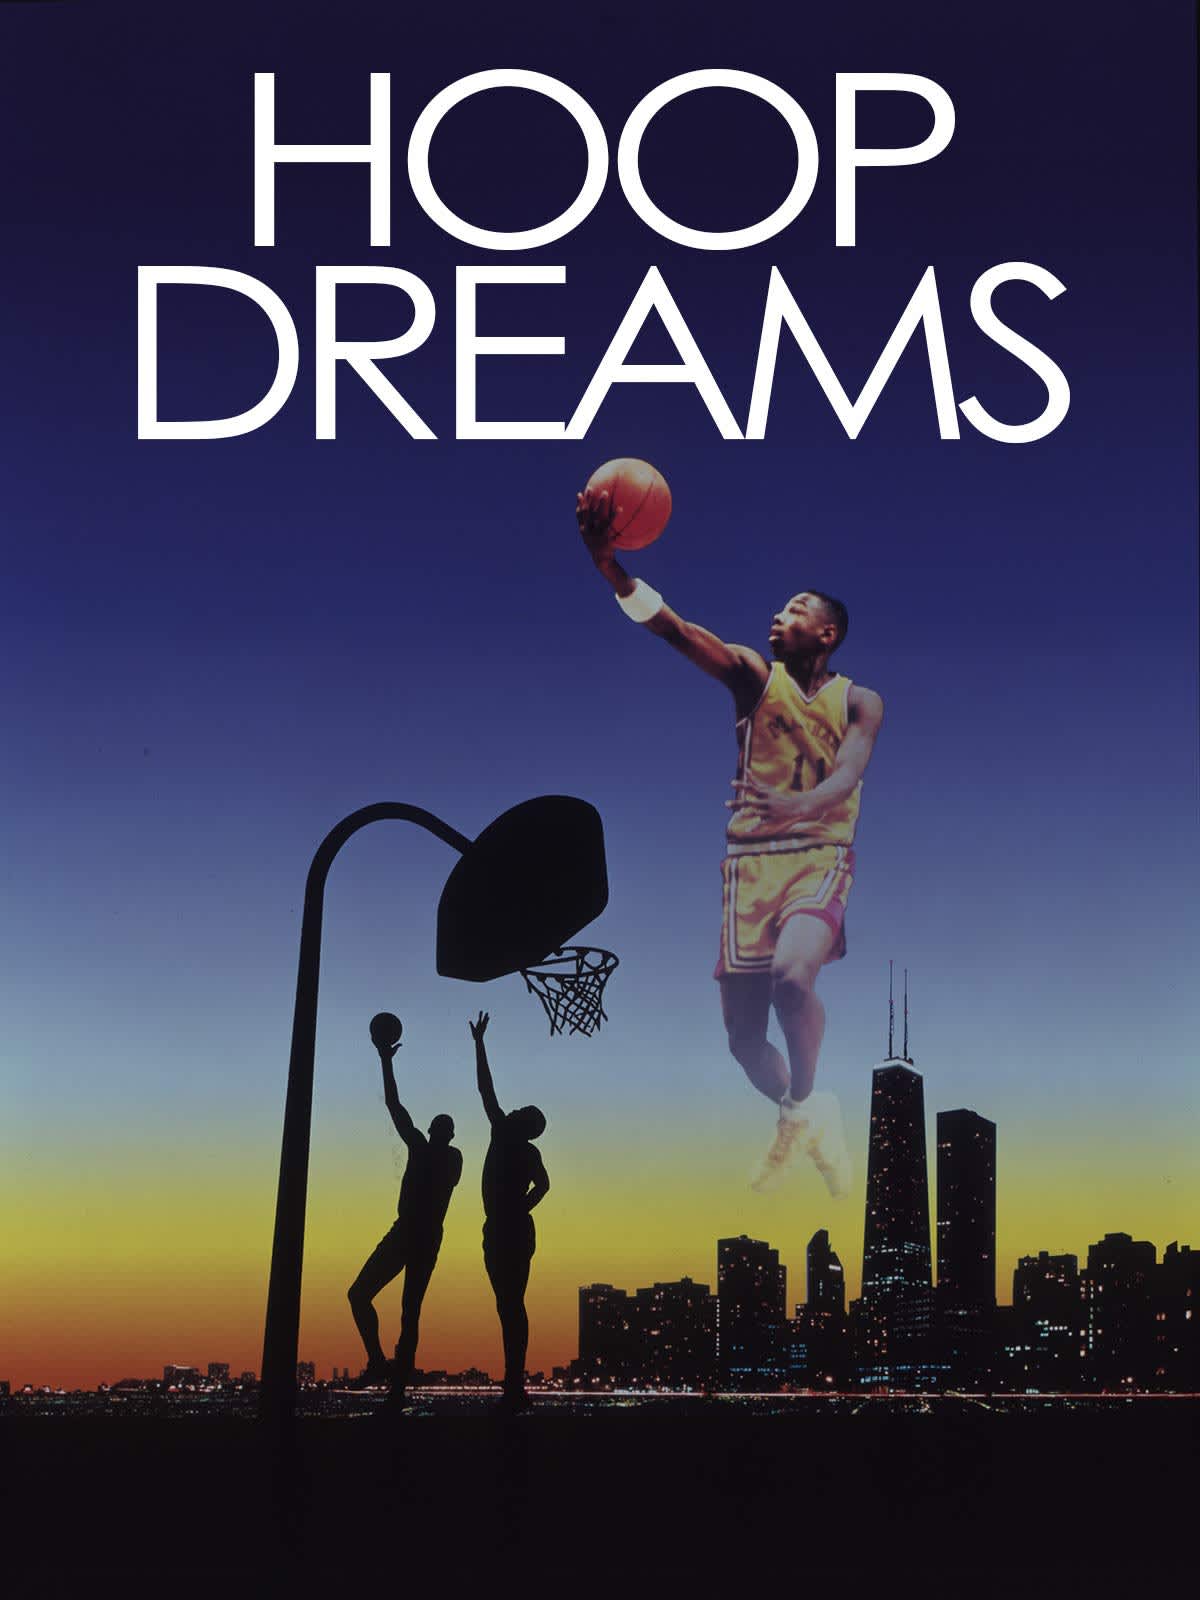 Hoop Dreams Movie Poster